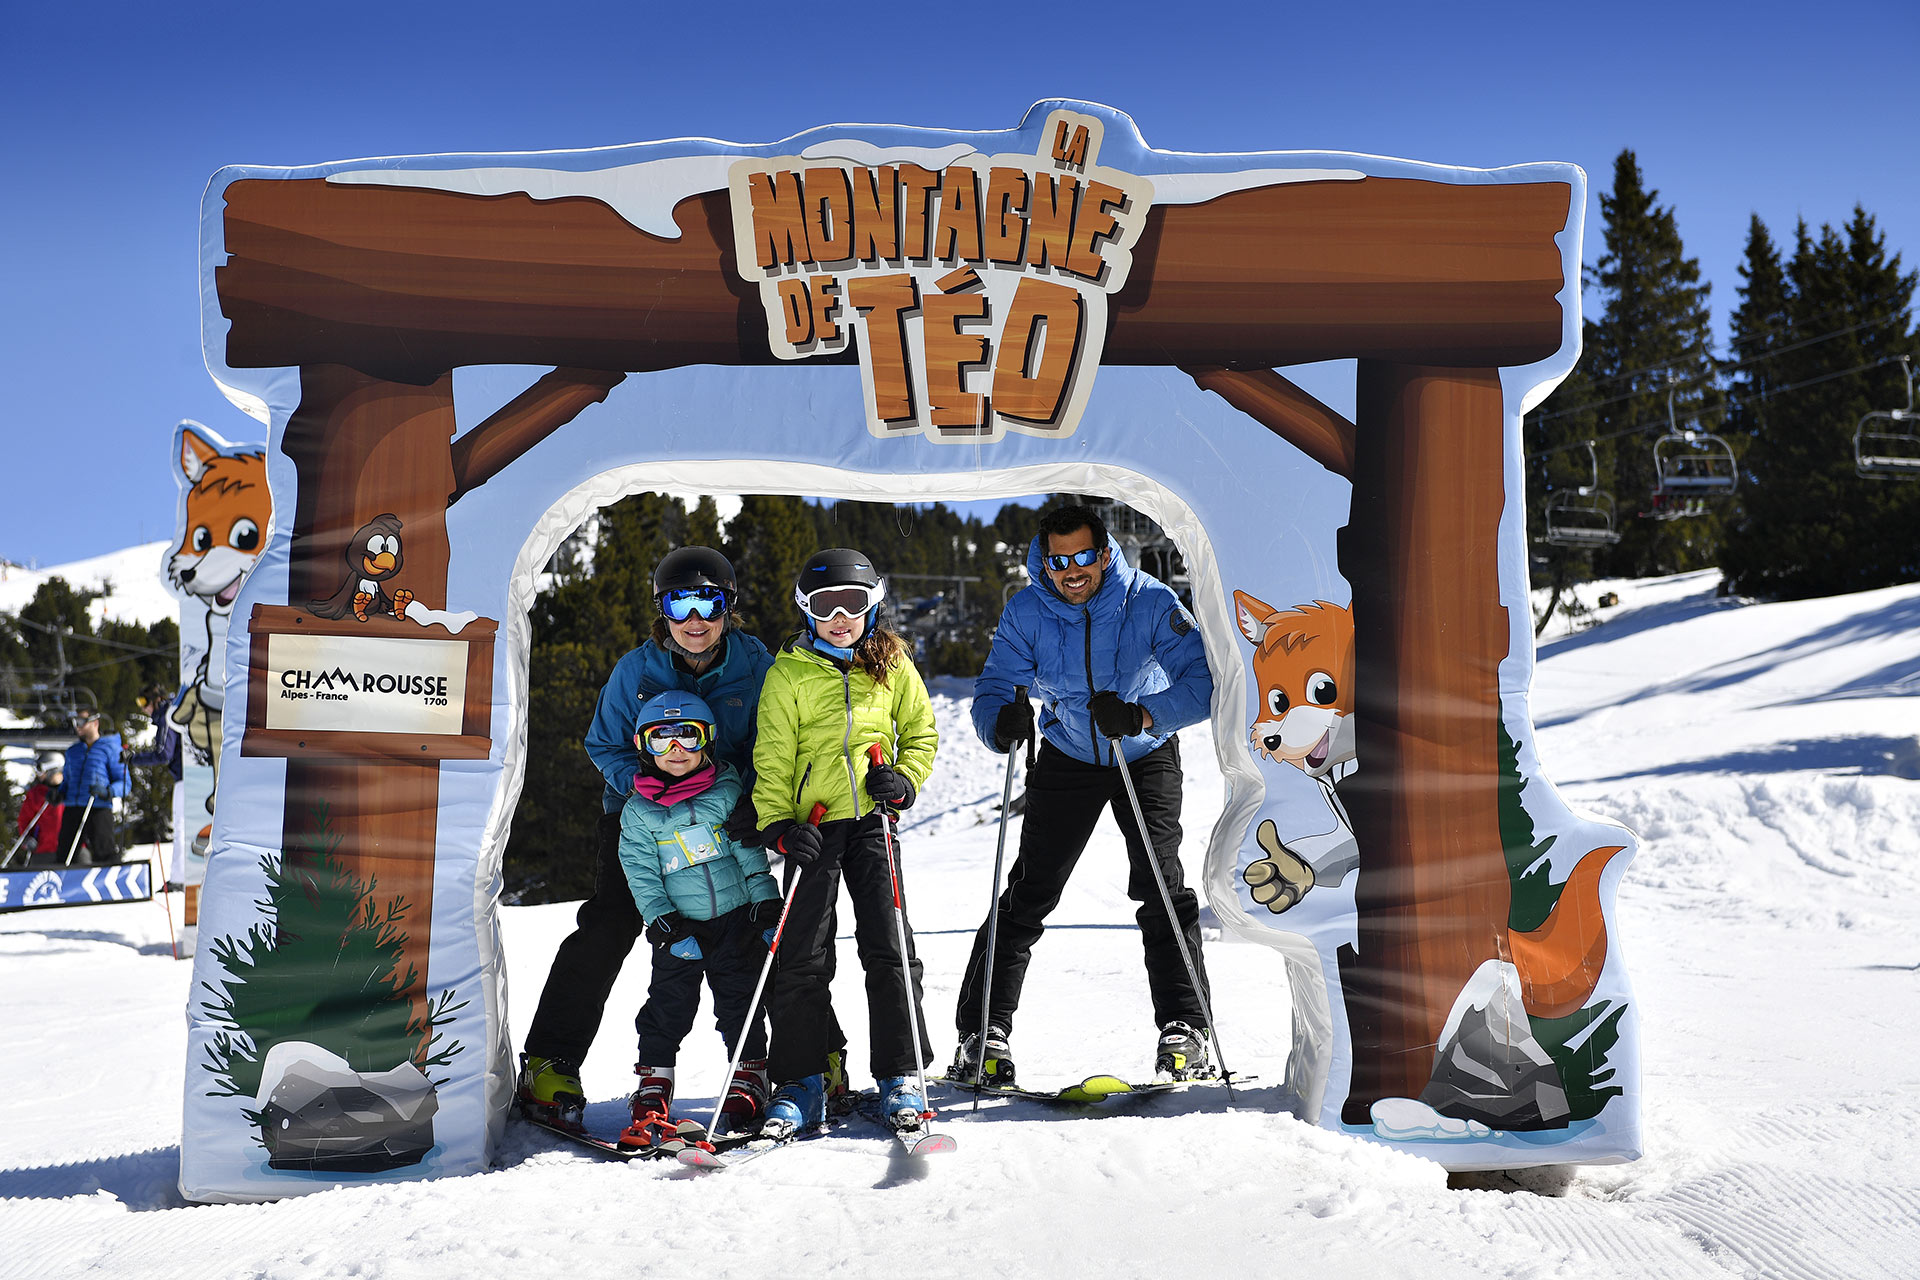 Chamrousse ski famille espace ski fun ludique family park montagne de Téo station hiver grenoble isère alpes france - © Fred Guerdin